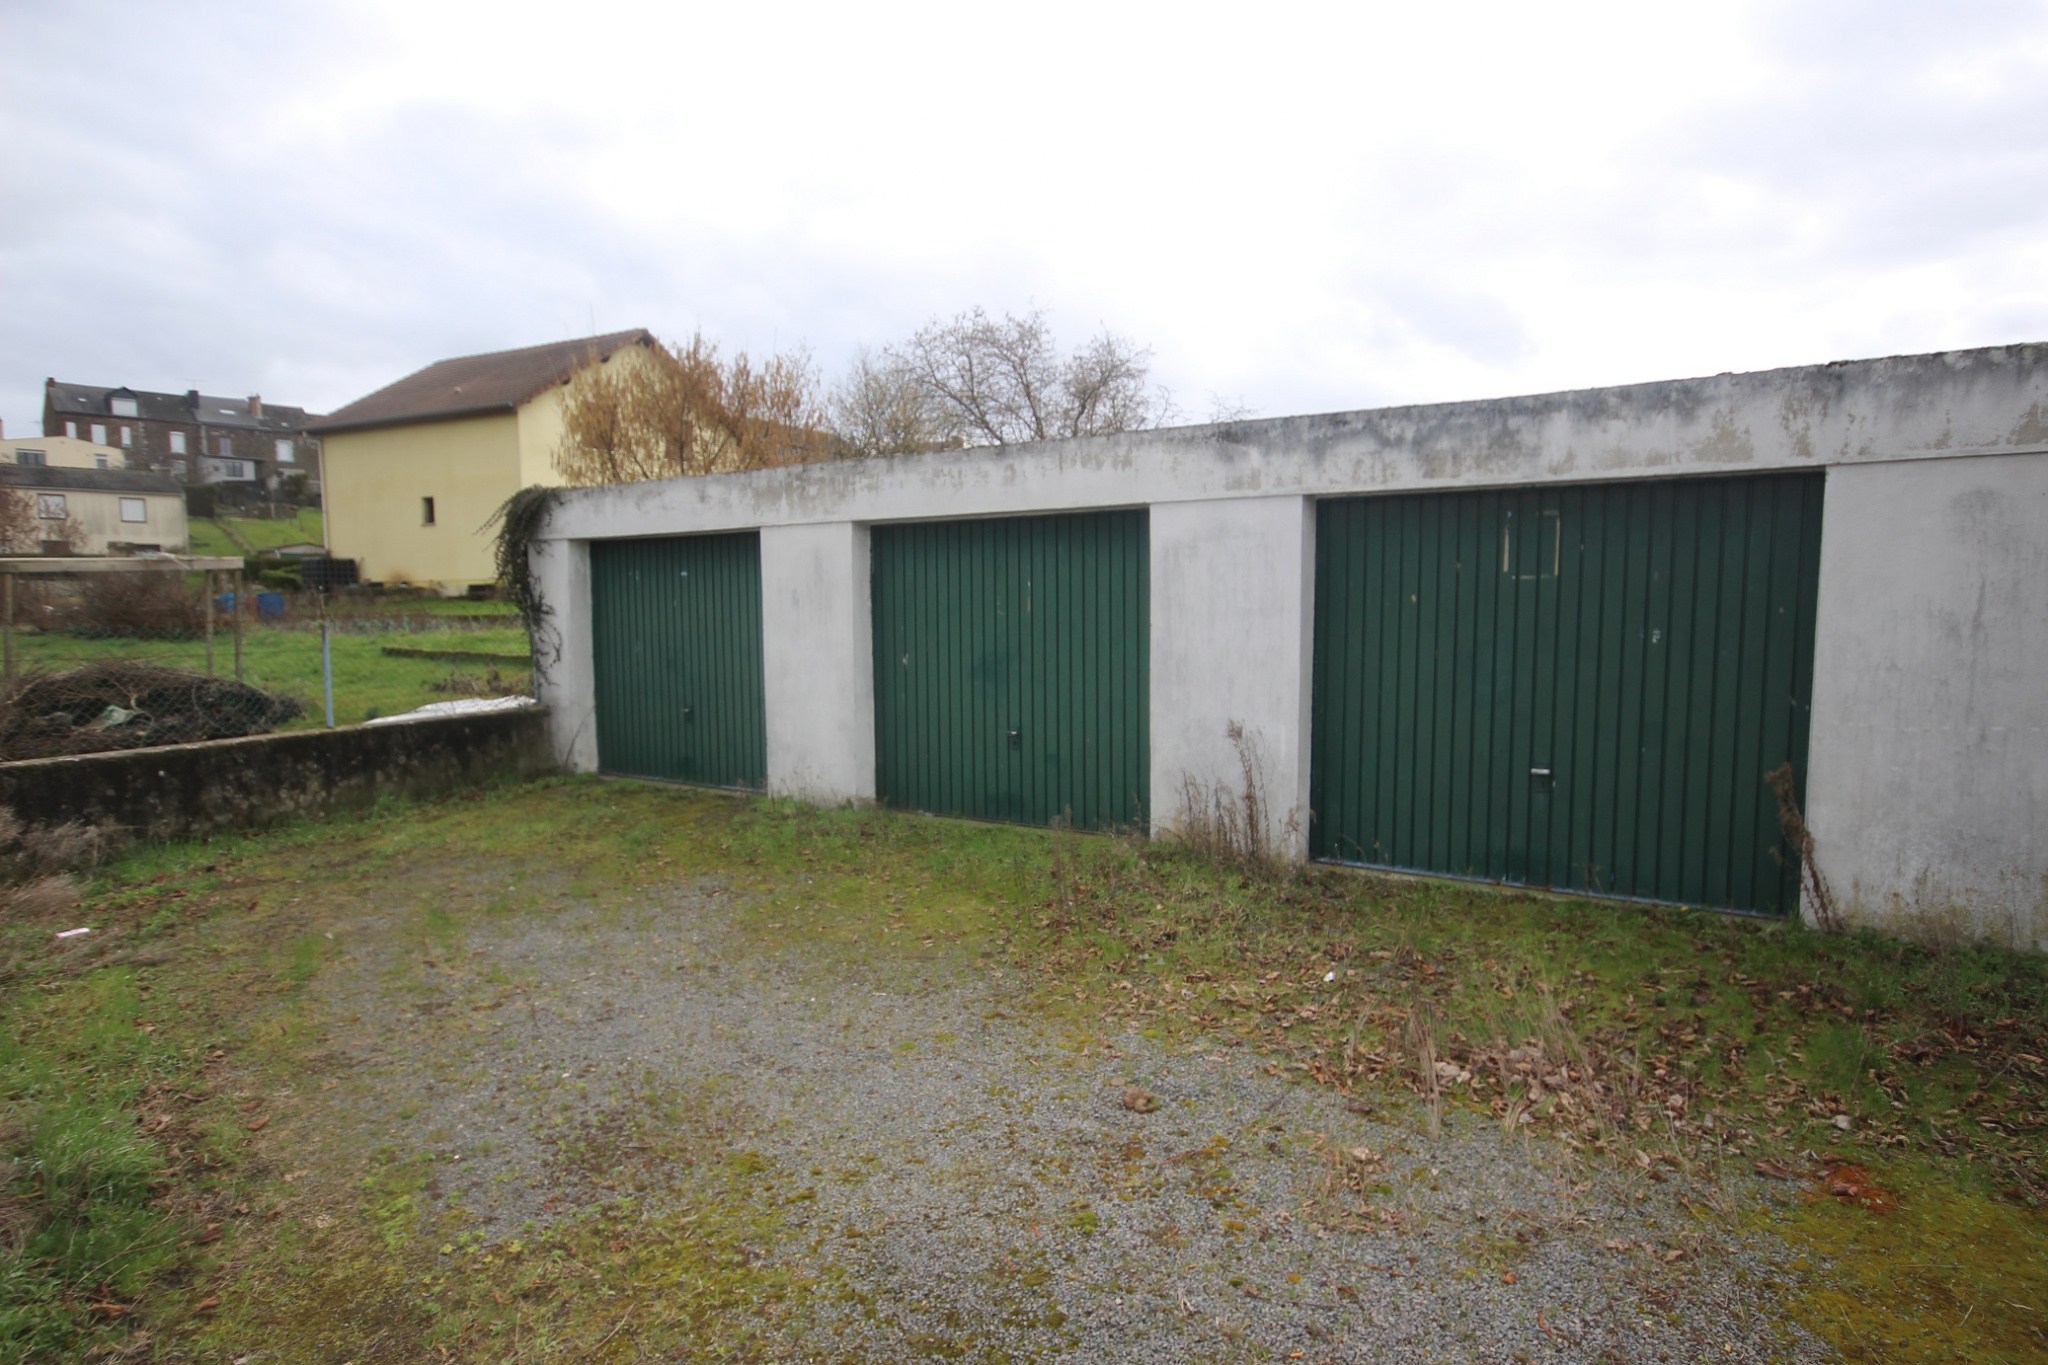 Lot de 3 garages sur la commune de Vireux-Wallerand, idéal i